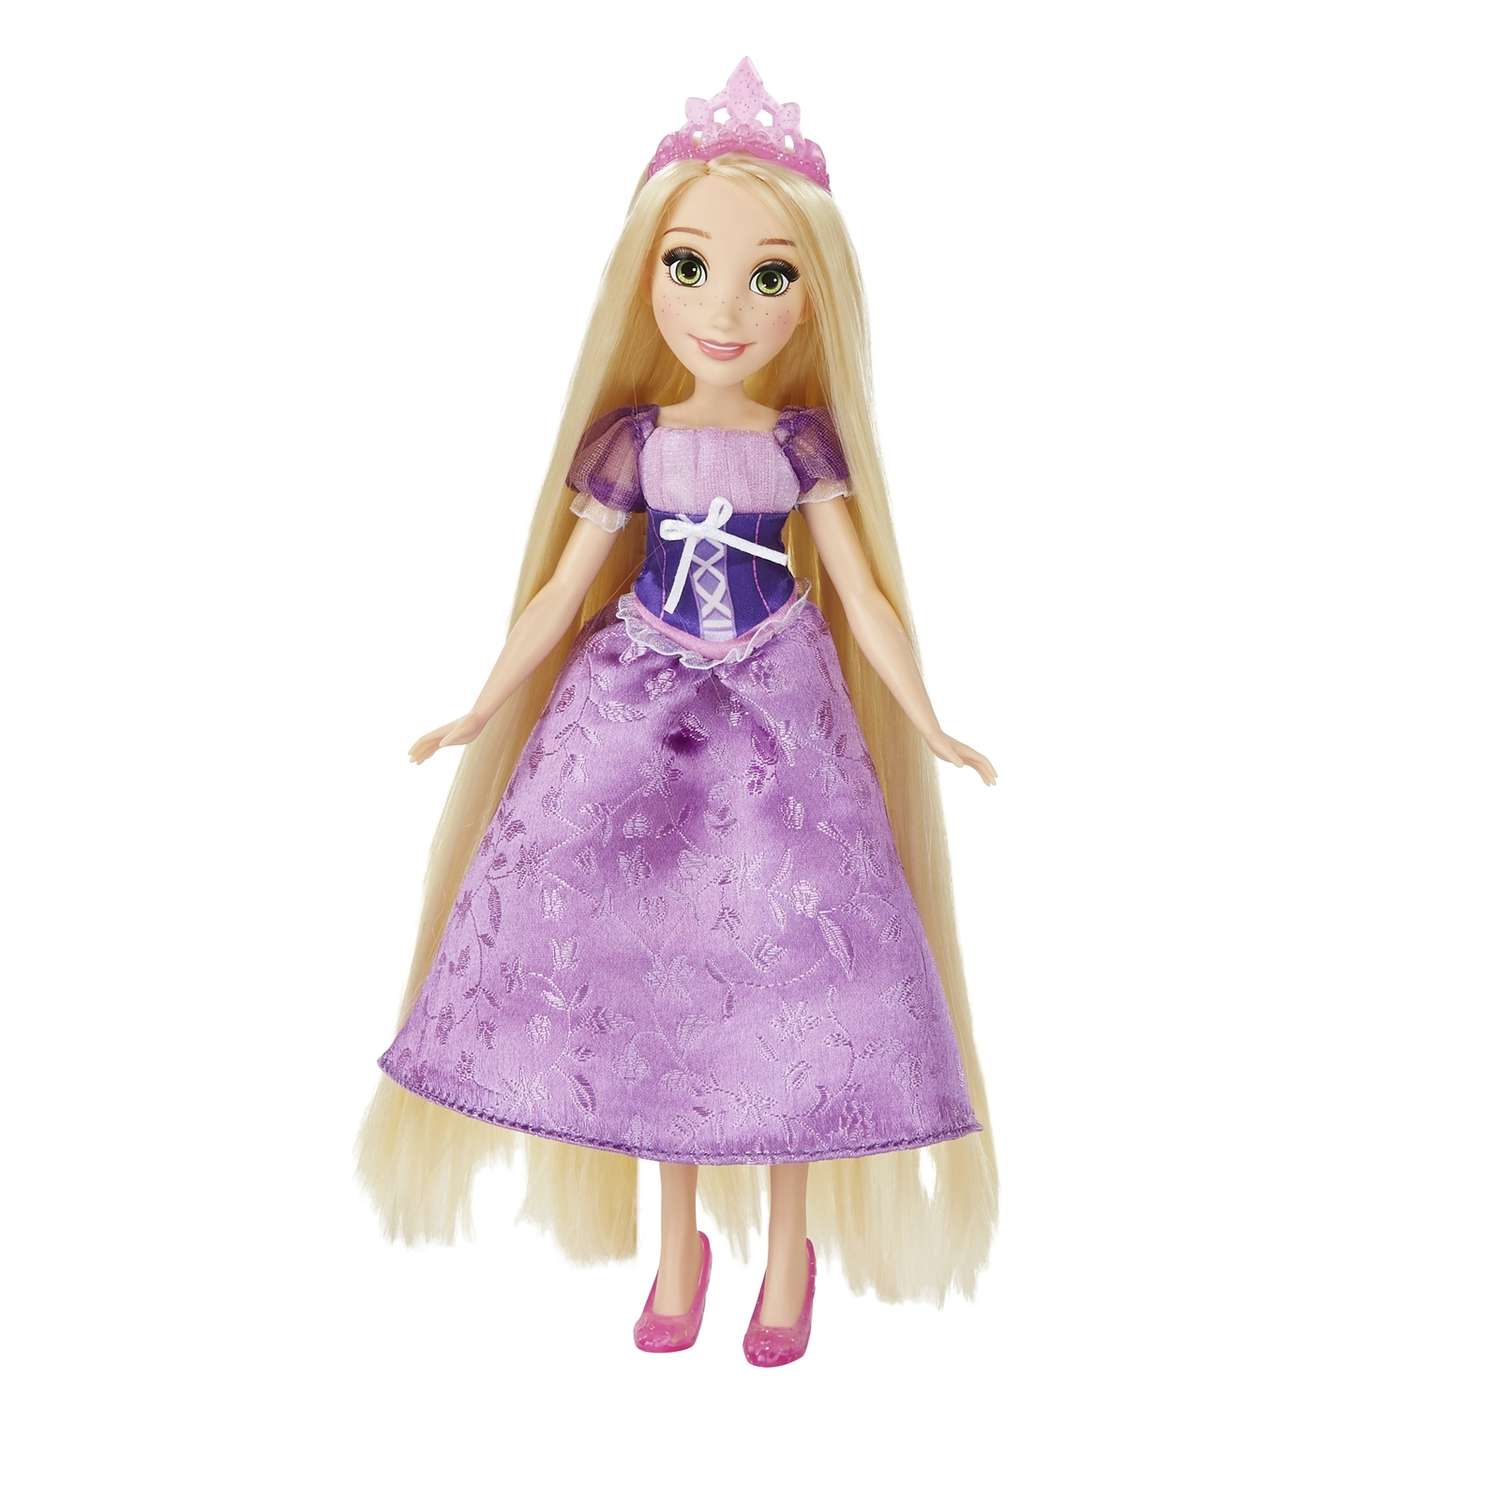 Базовая кукла Princess Принцесса в ассортименте B5292EU4 - фото 2